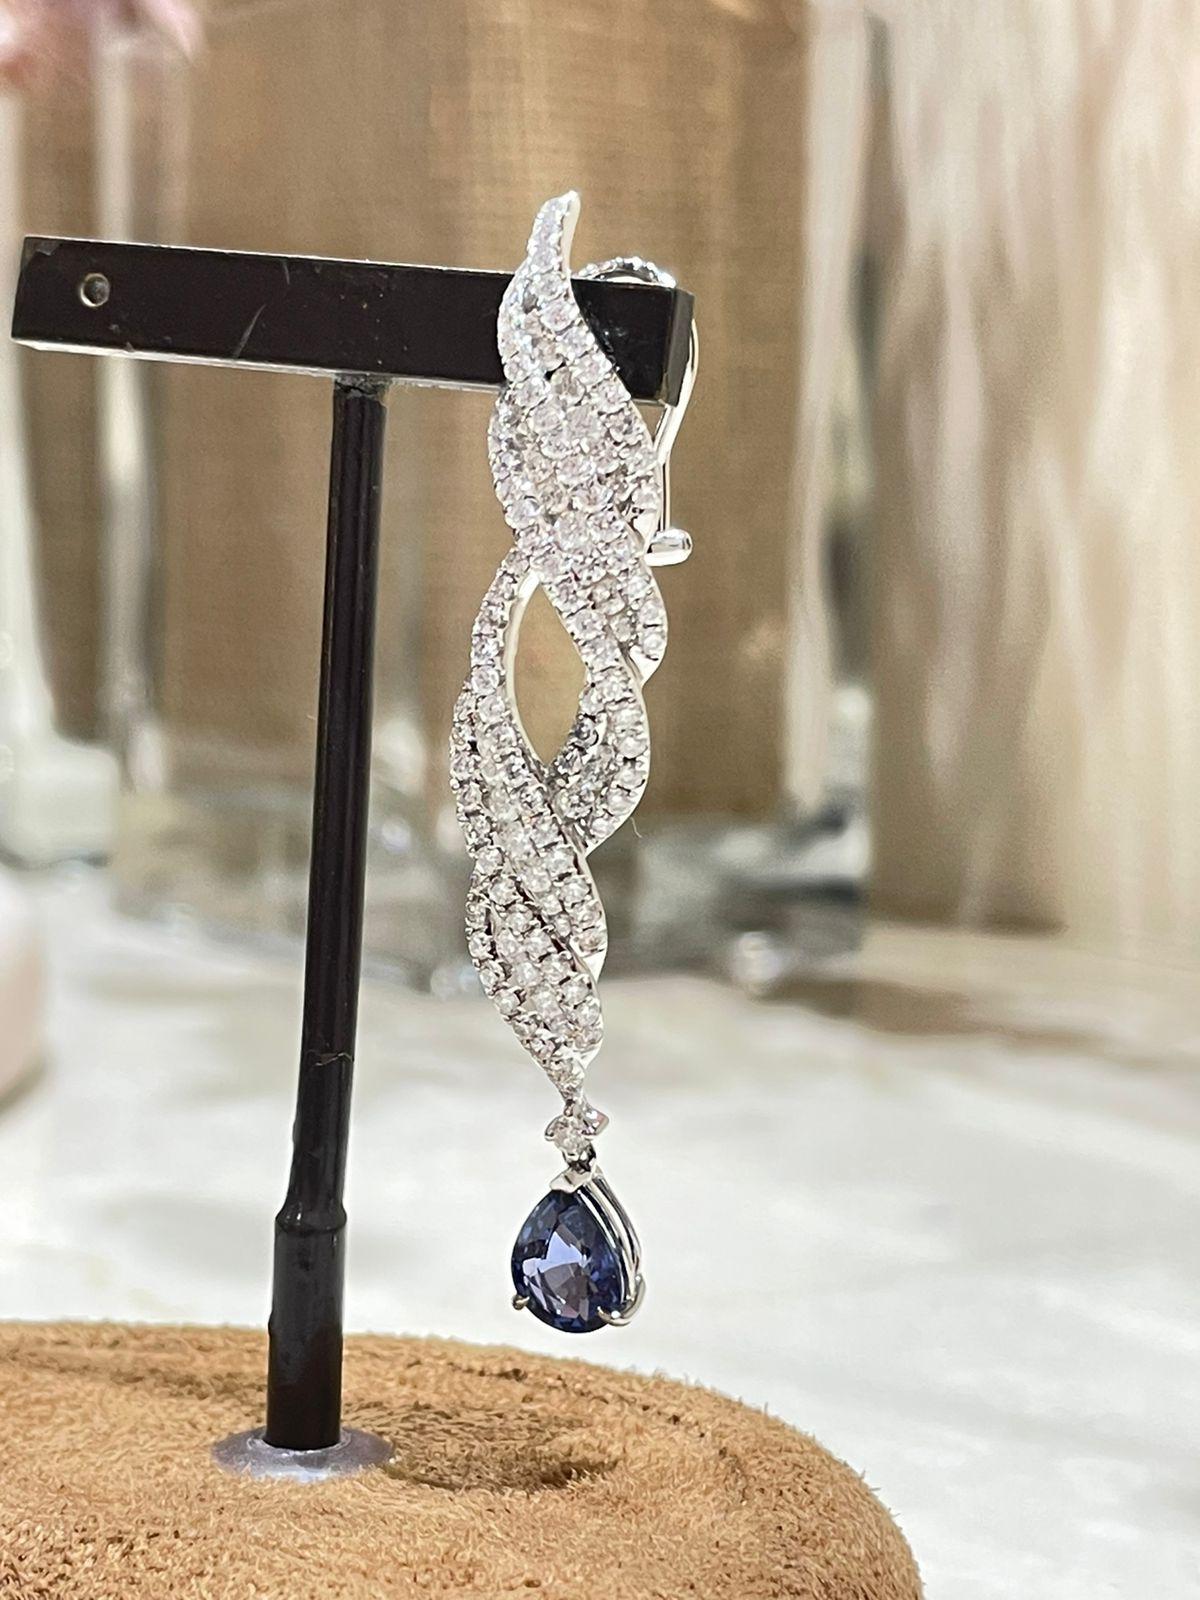 Diese baumelnden Ohrringe strahlen Raffinesse und Eleganz aus und bieten ein perfektes Gleichgewicht zwischen Schlichtheit und Opulenz. Ein auffallend blauer Saphir wird von exquisiten Diamanten im Rundschliff umrahmt. Das Design sorgt bei jeder